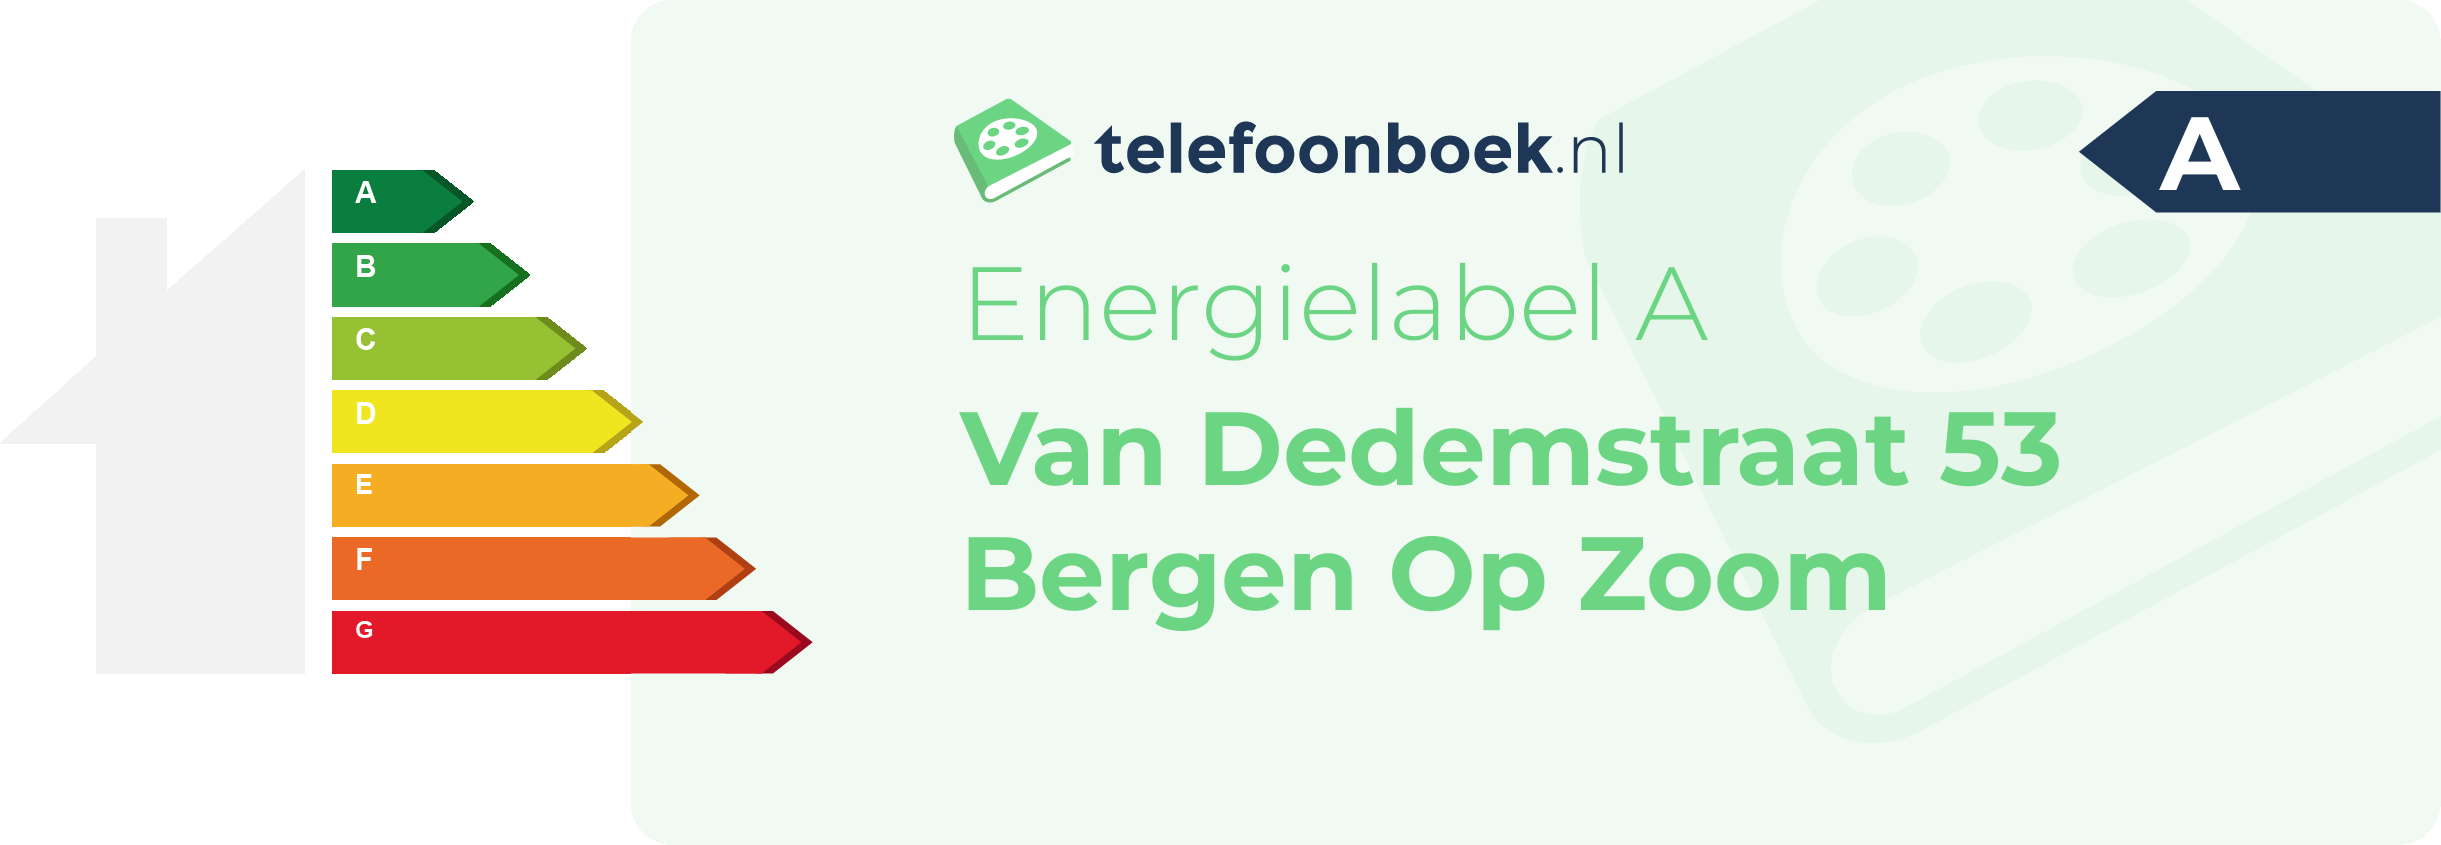 Energielabel Van Dedemstraat 53 Bergen Op Zoom